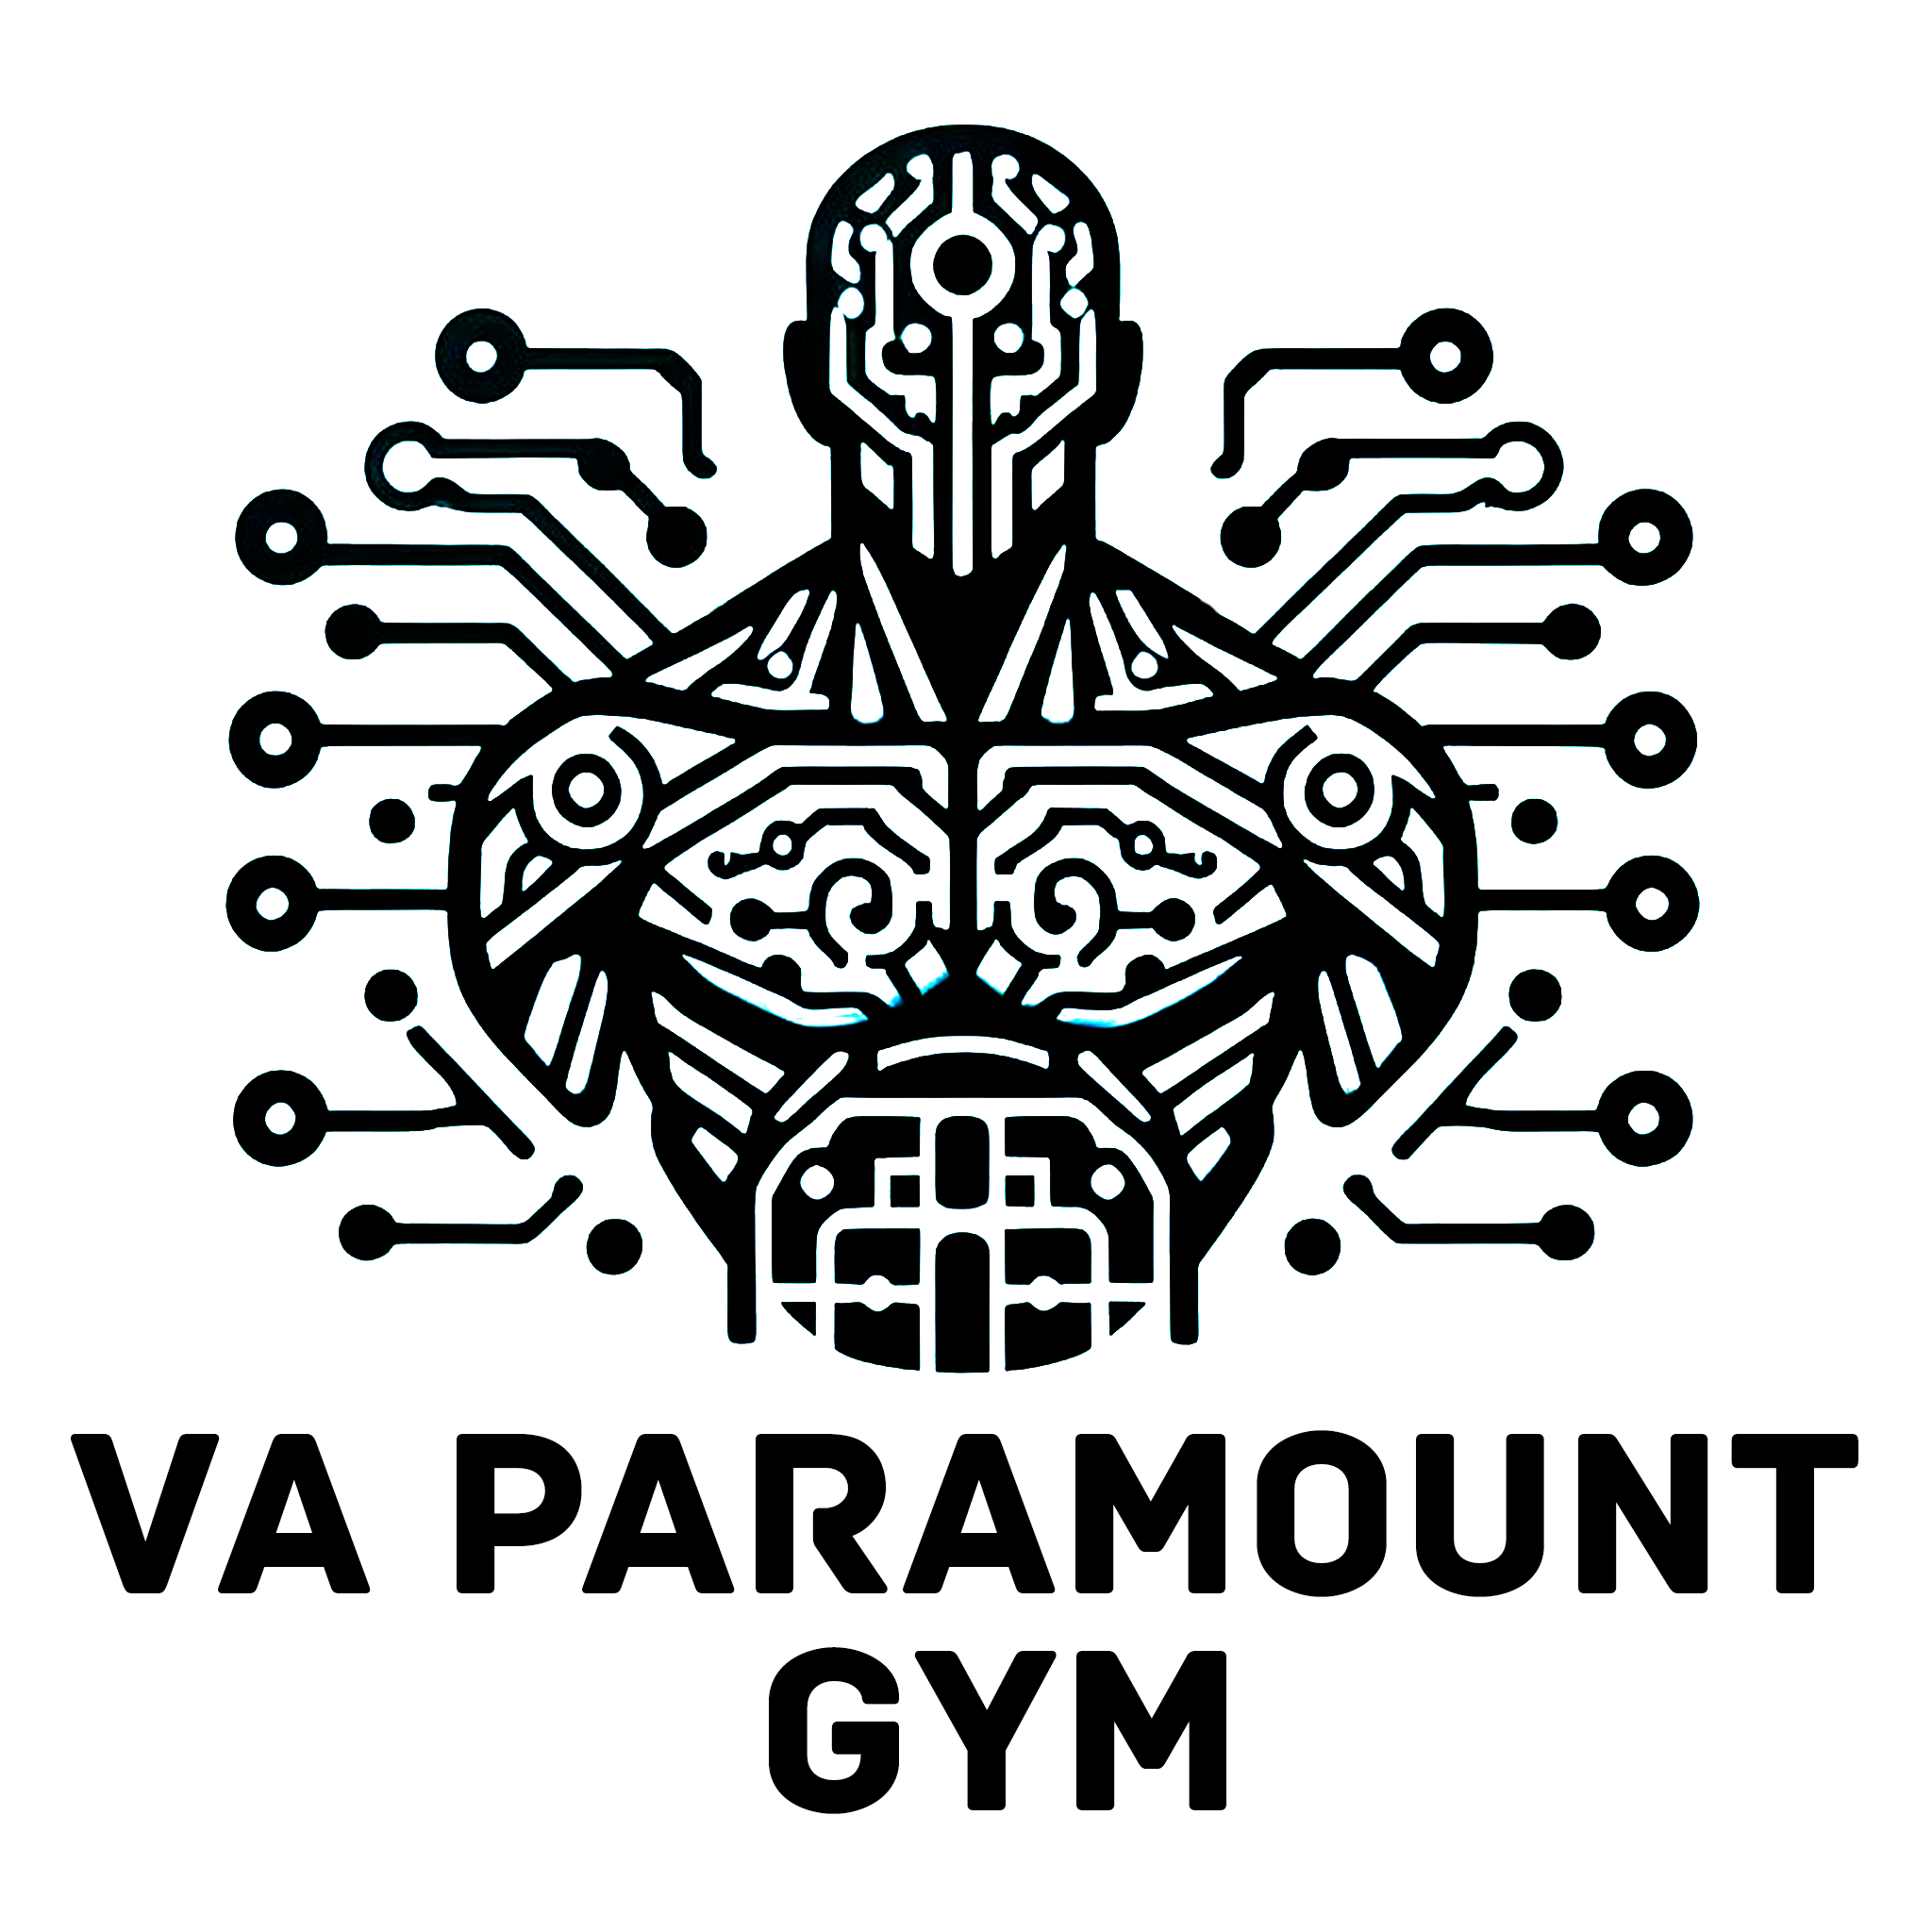 VA Paramount